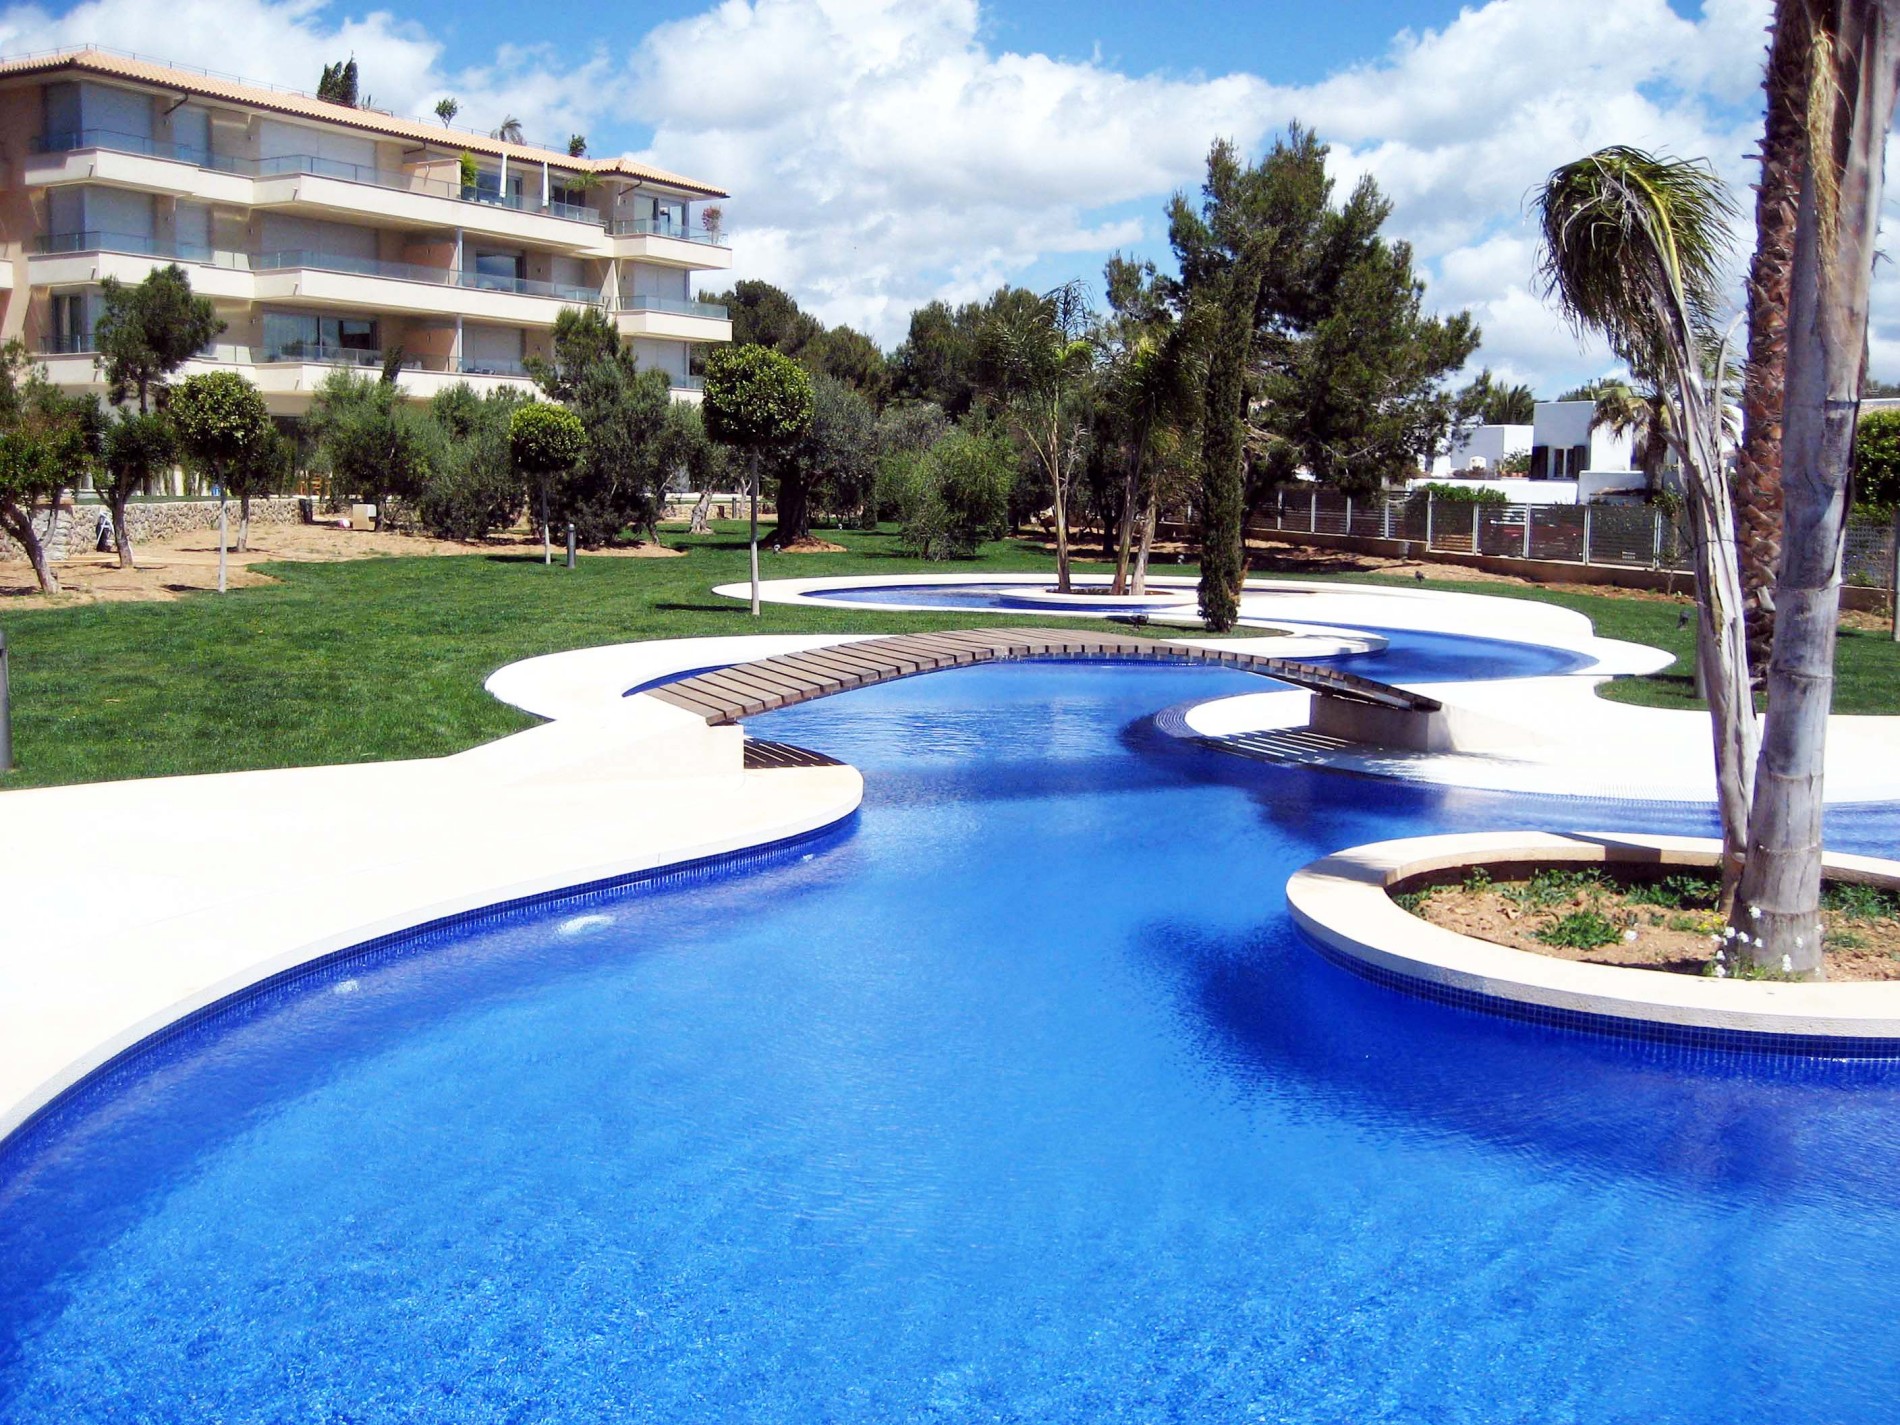 Diseño complejos residenciales en Mallorca